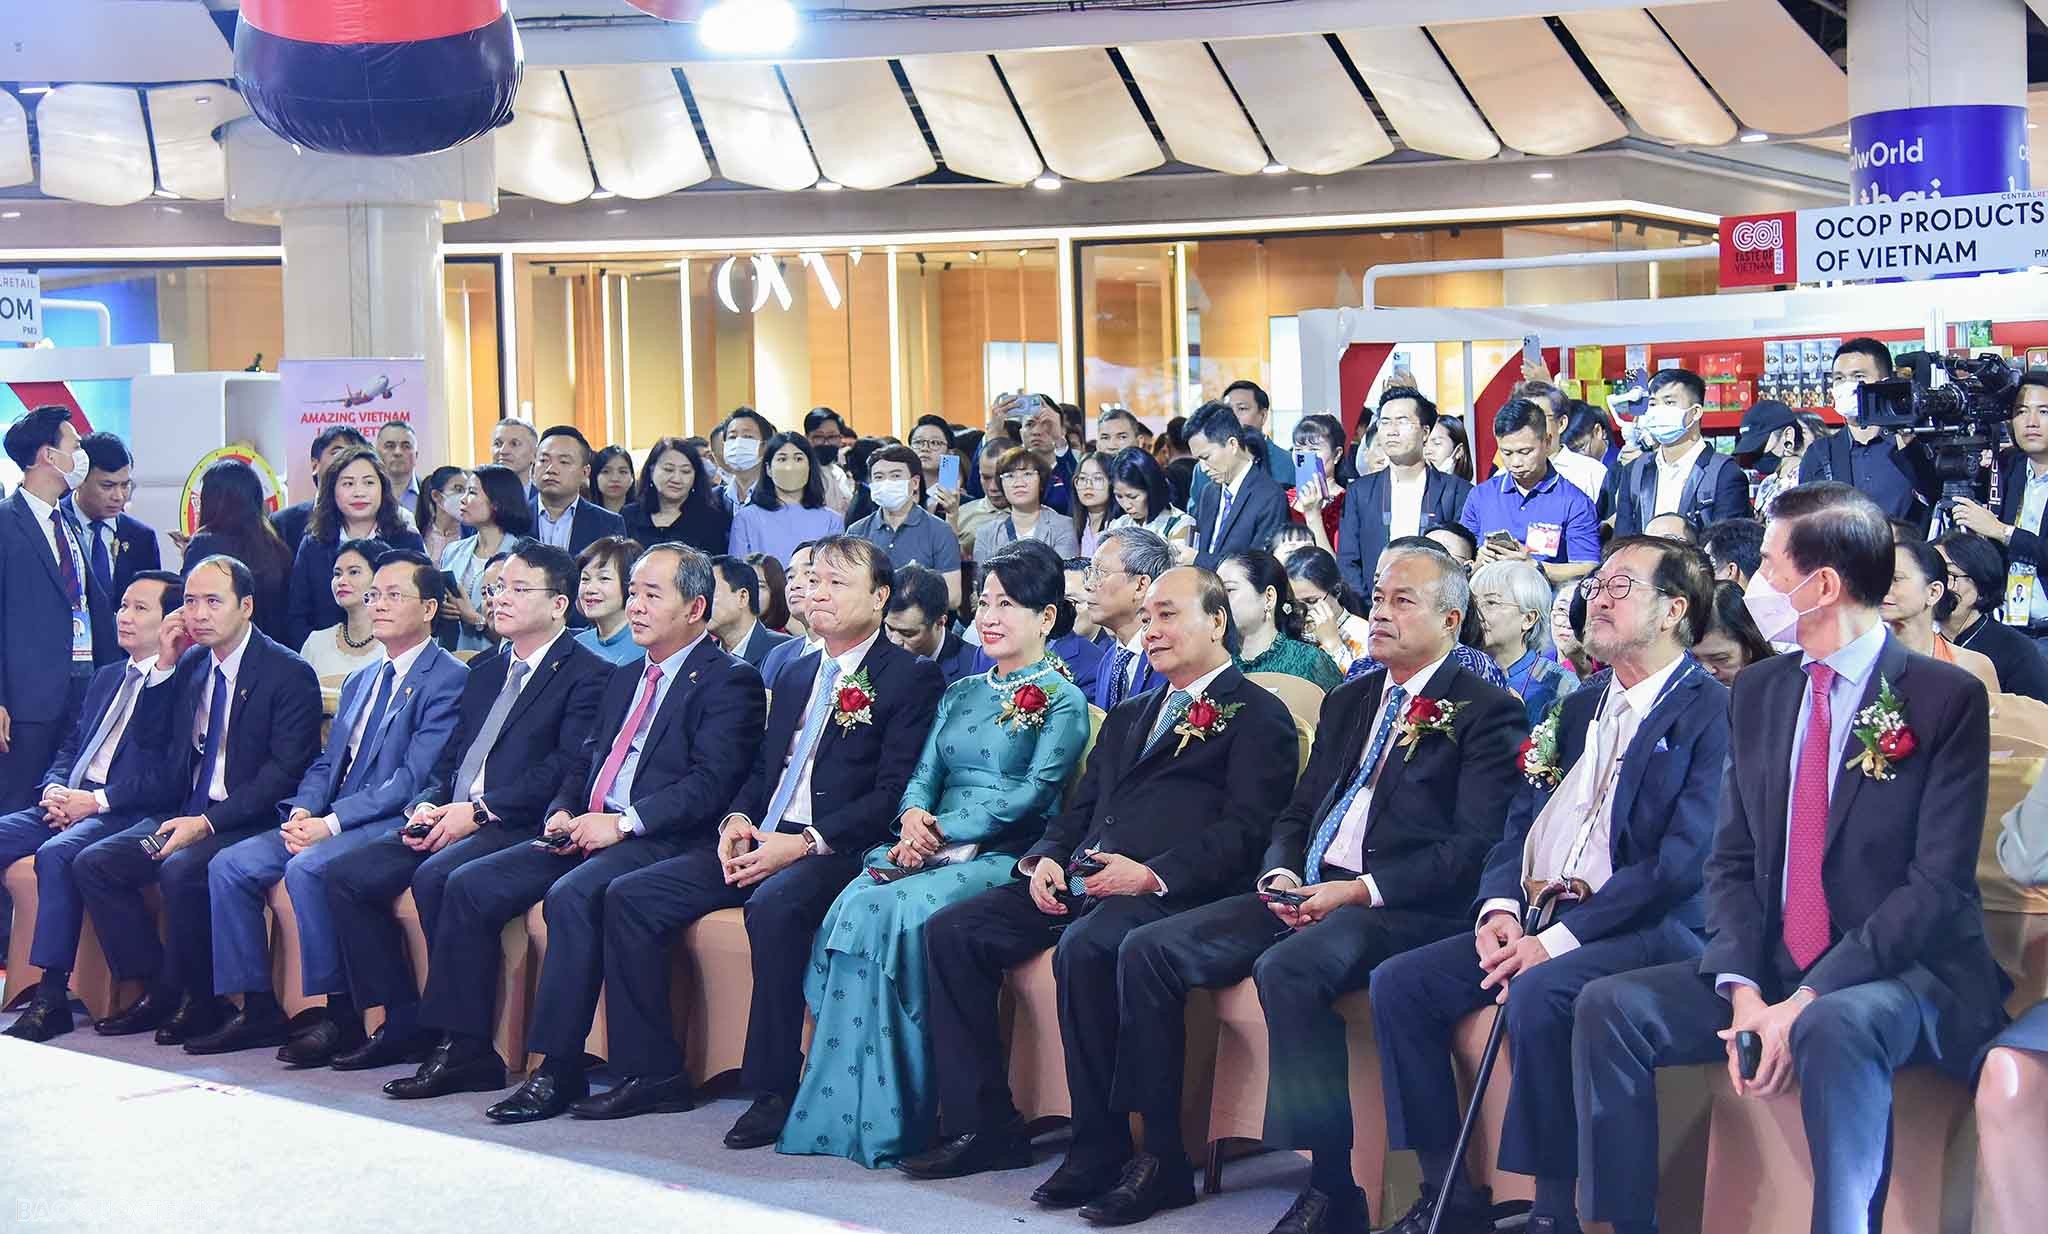 Chủ tịch nước Nguyễn Xuân Phúc cắt băng khởi động Tuần hàng Việt Nam tại Thái Lan